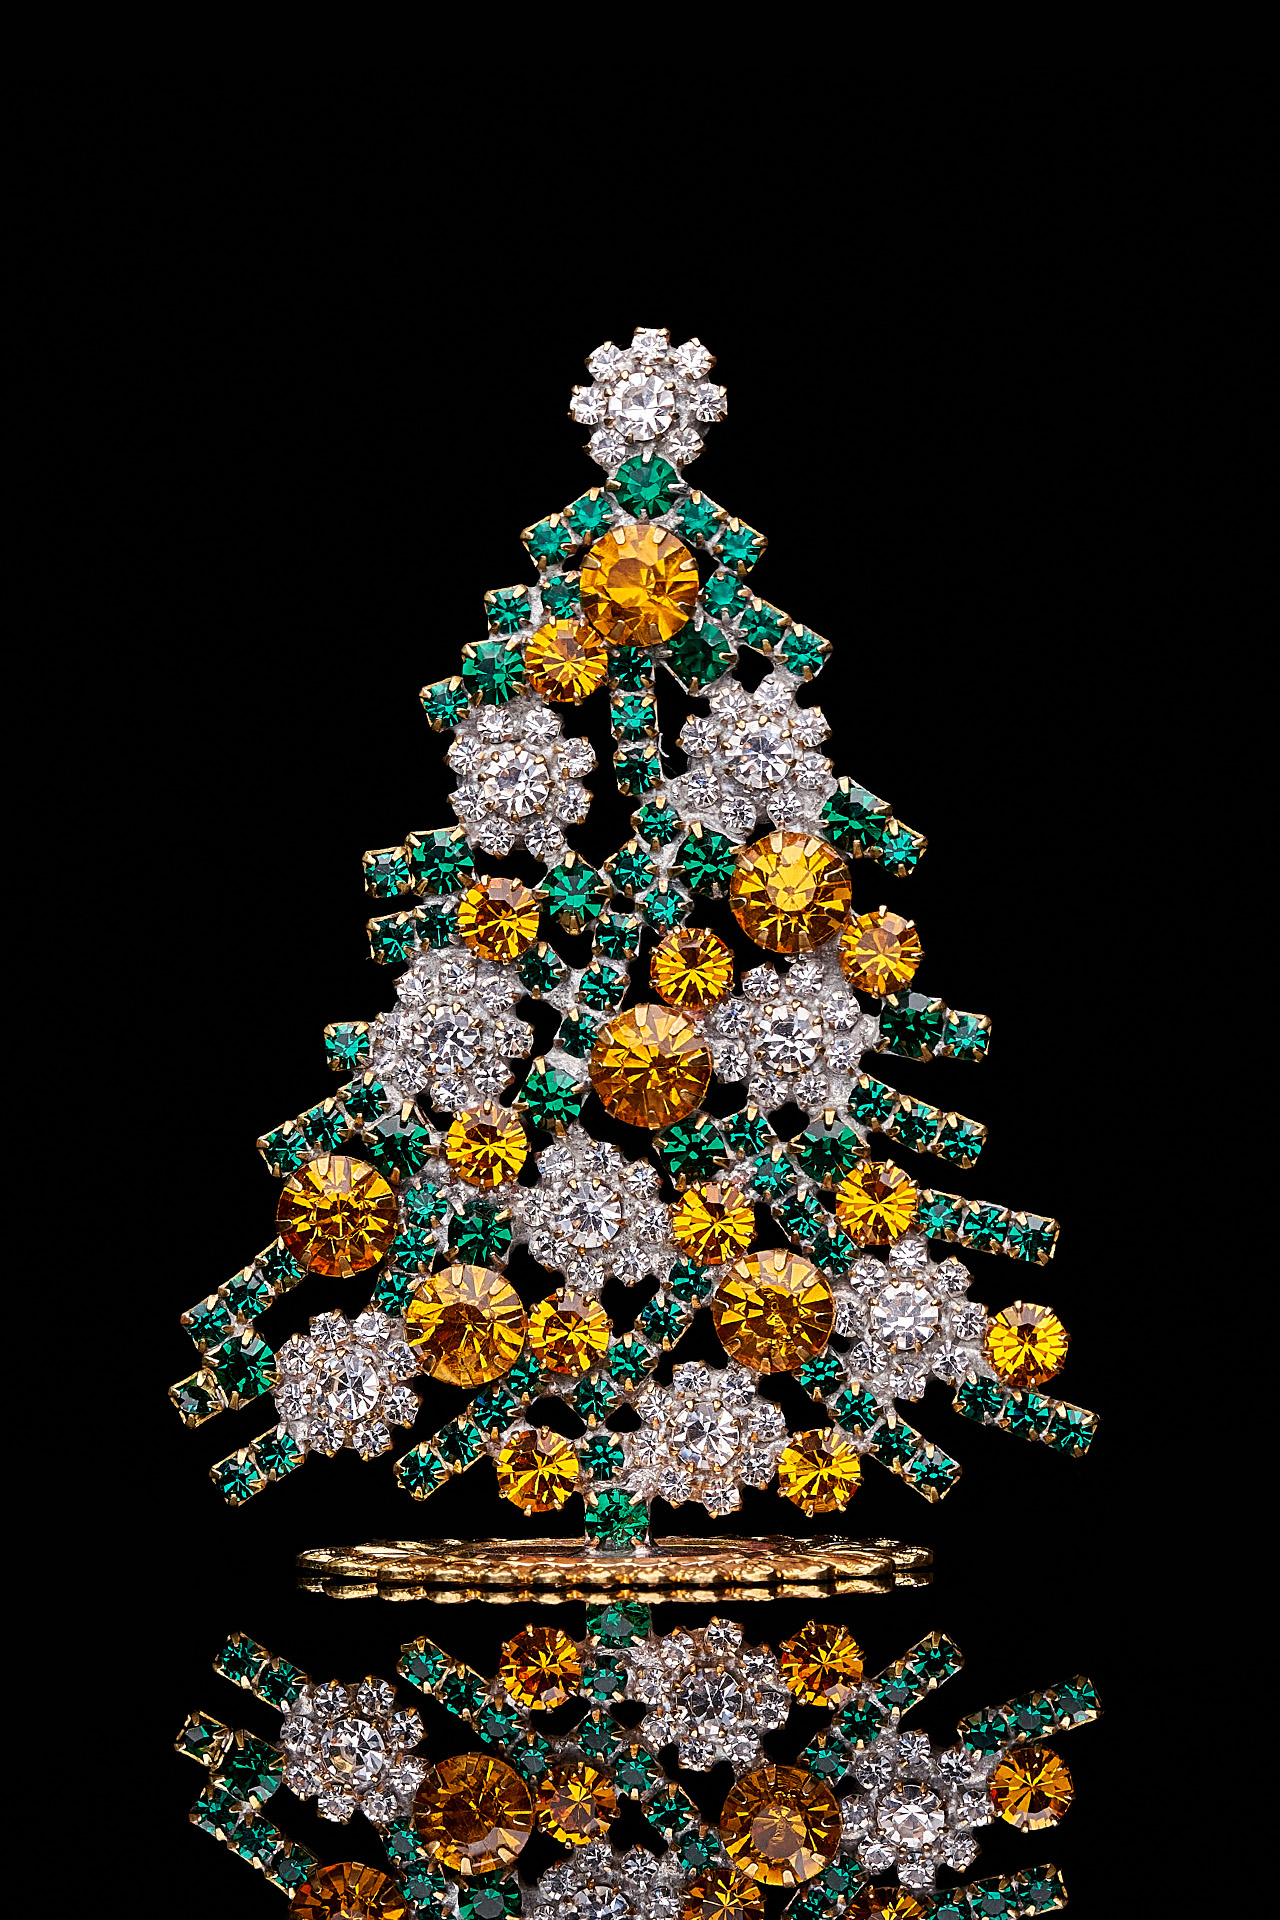 Luminous Christmas tree handmade with green and yellow rhinestones